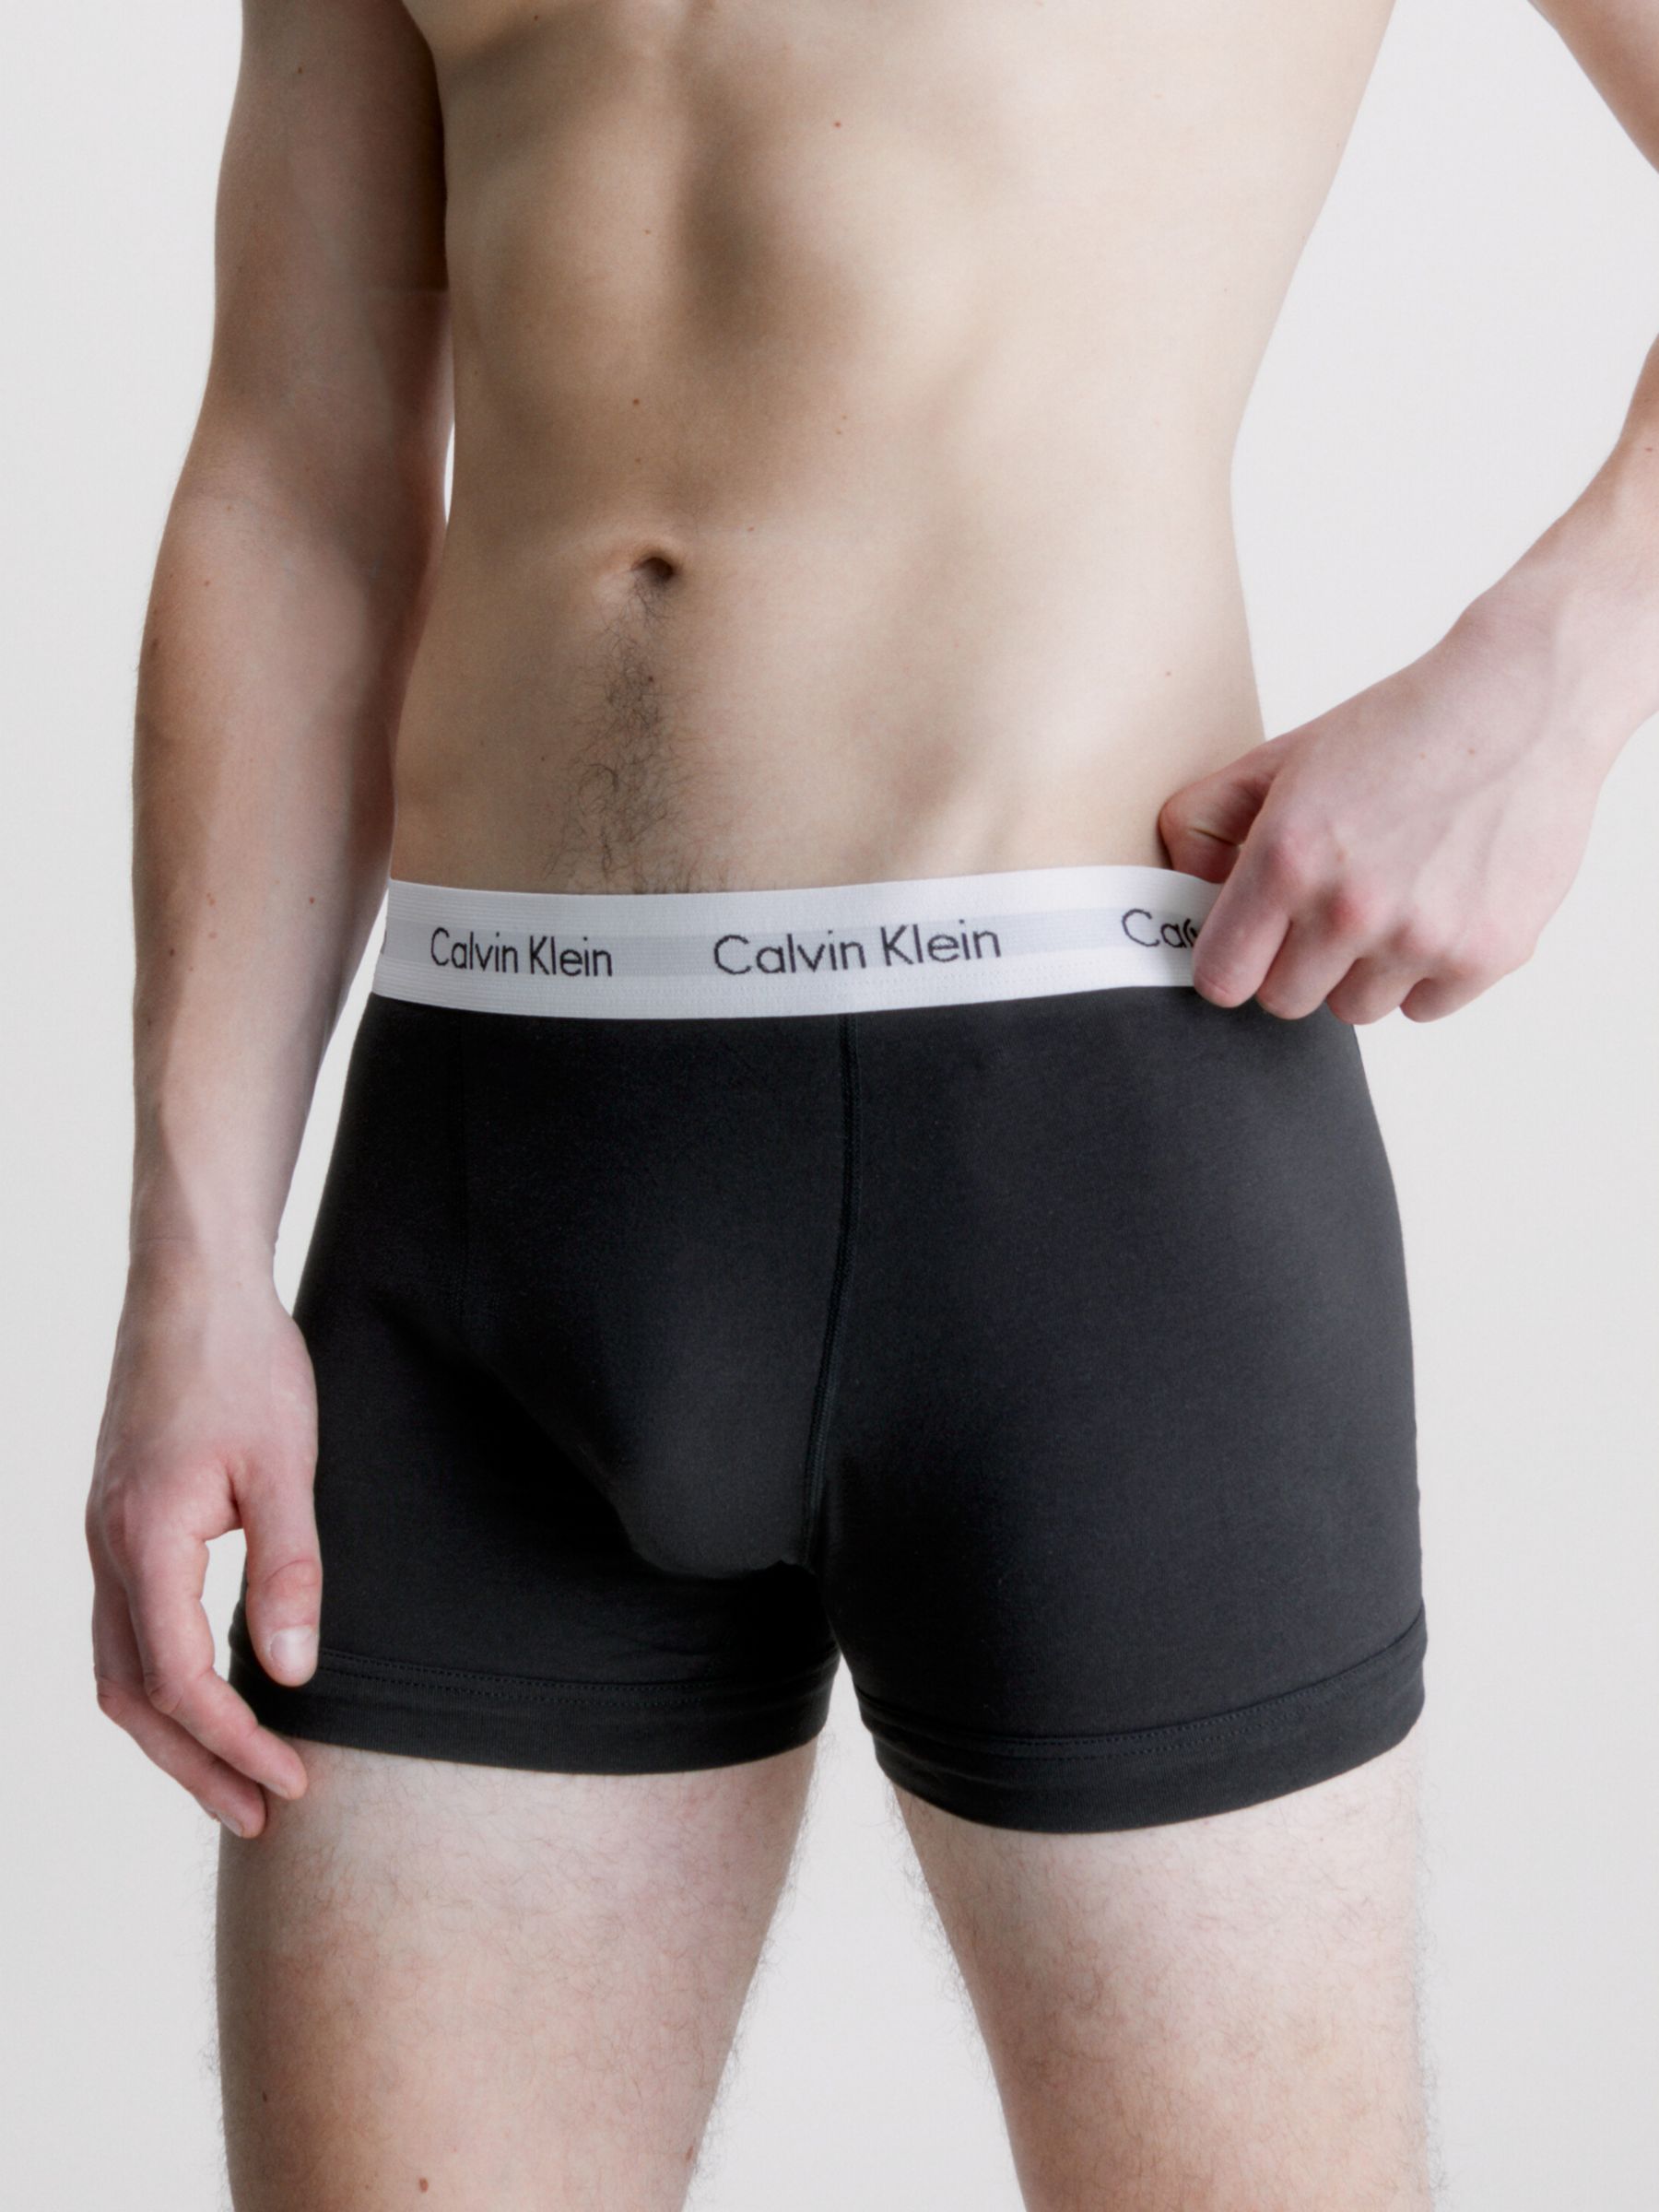 Calvin Klein Women's Modern Cotton Boxer Brief, Grey Heather,L - US